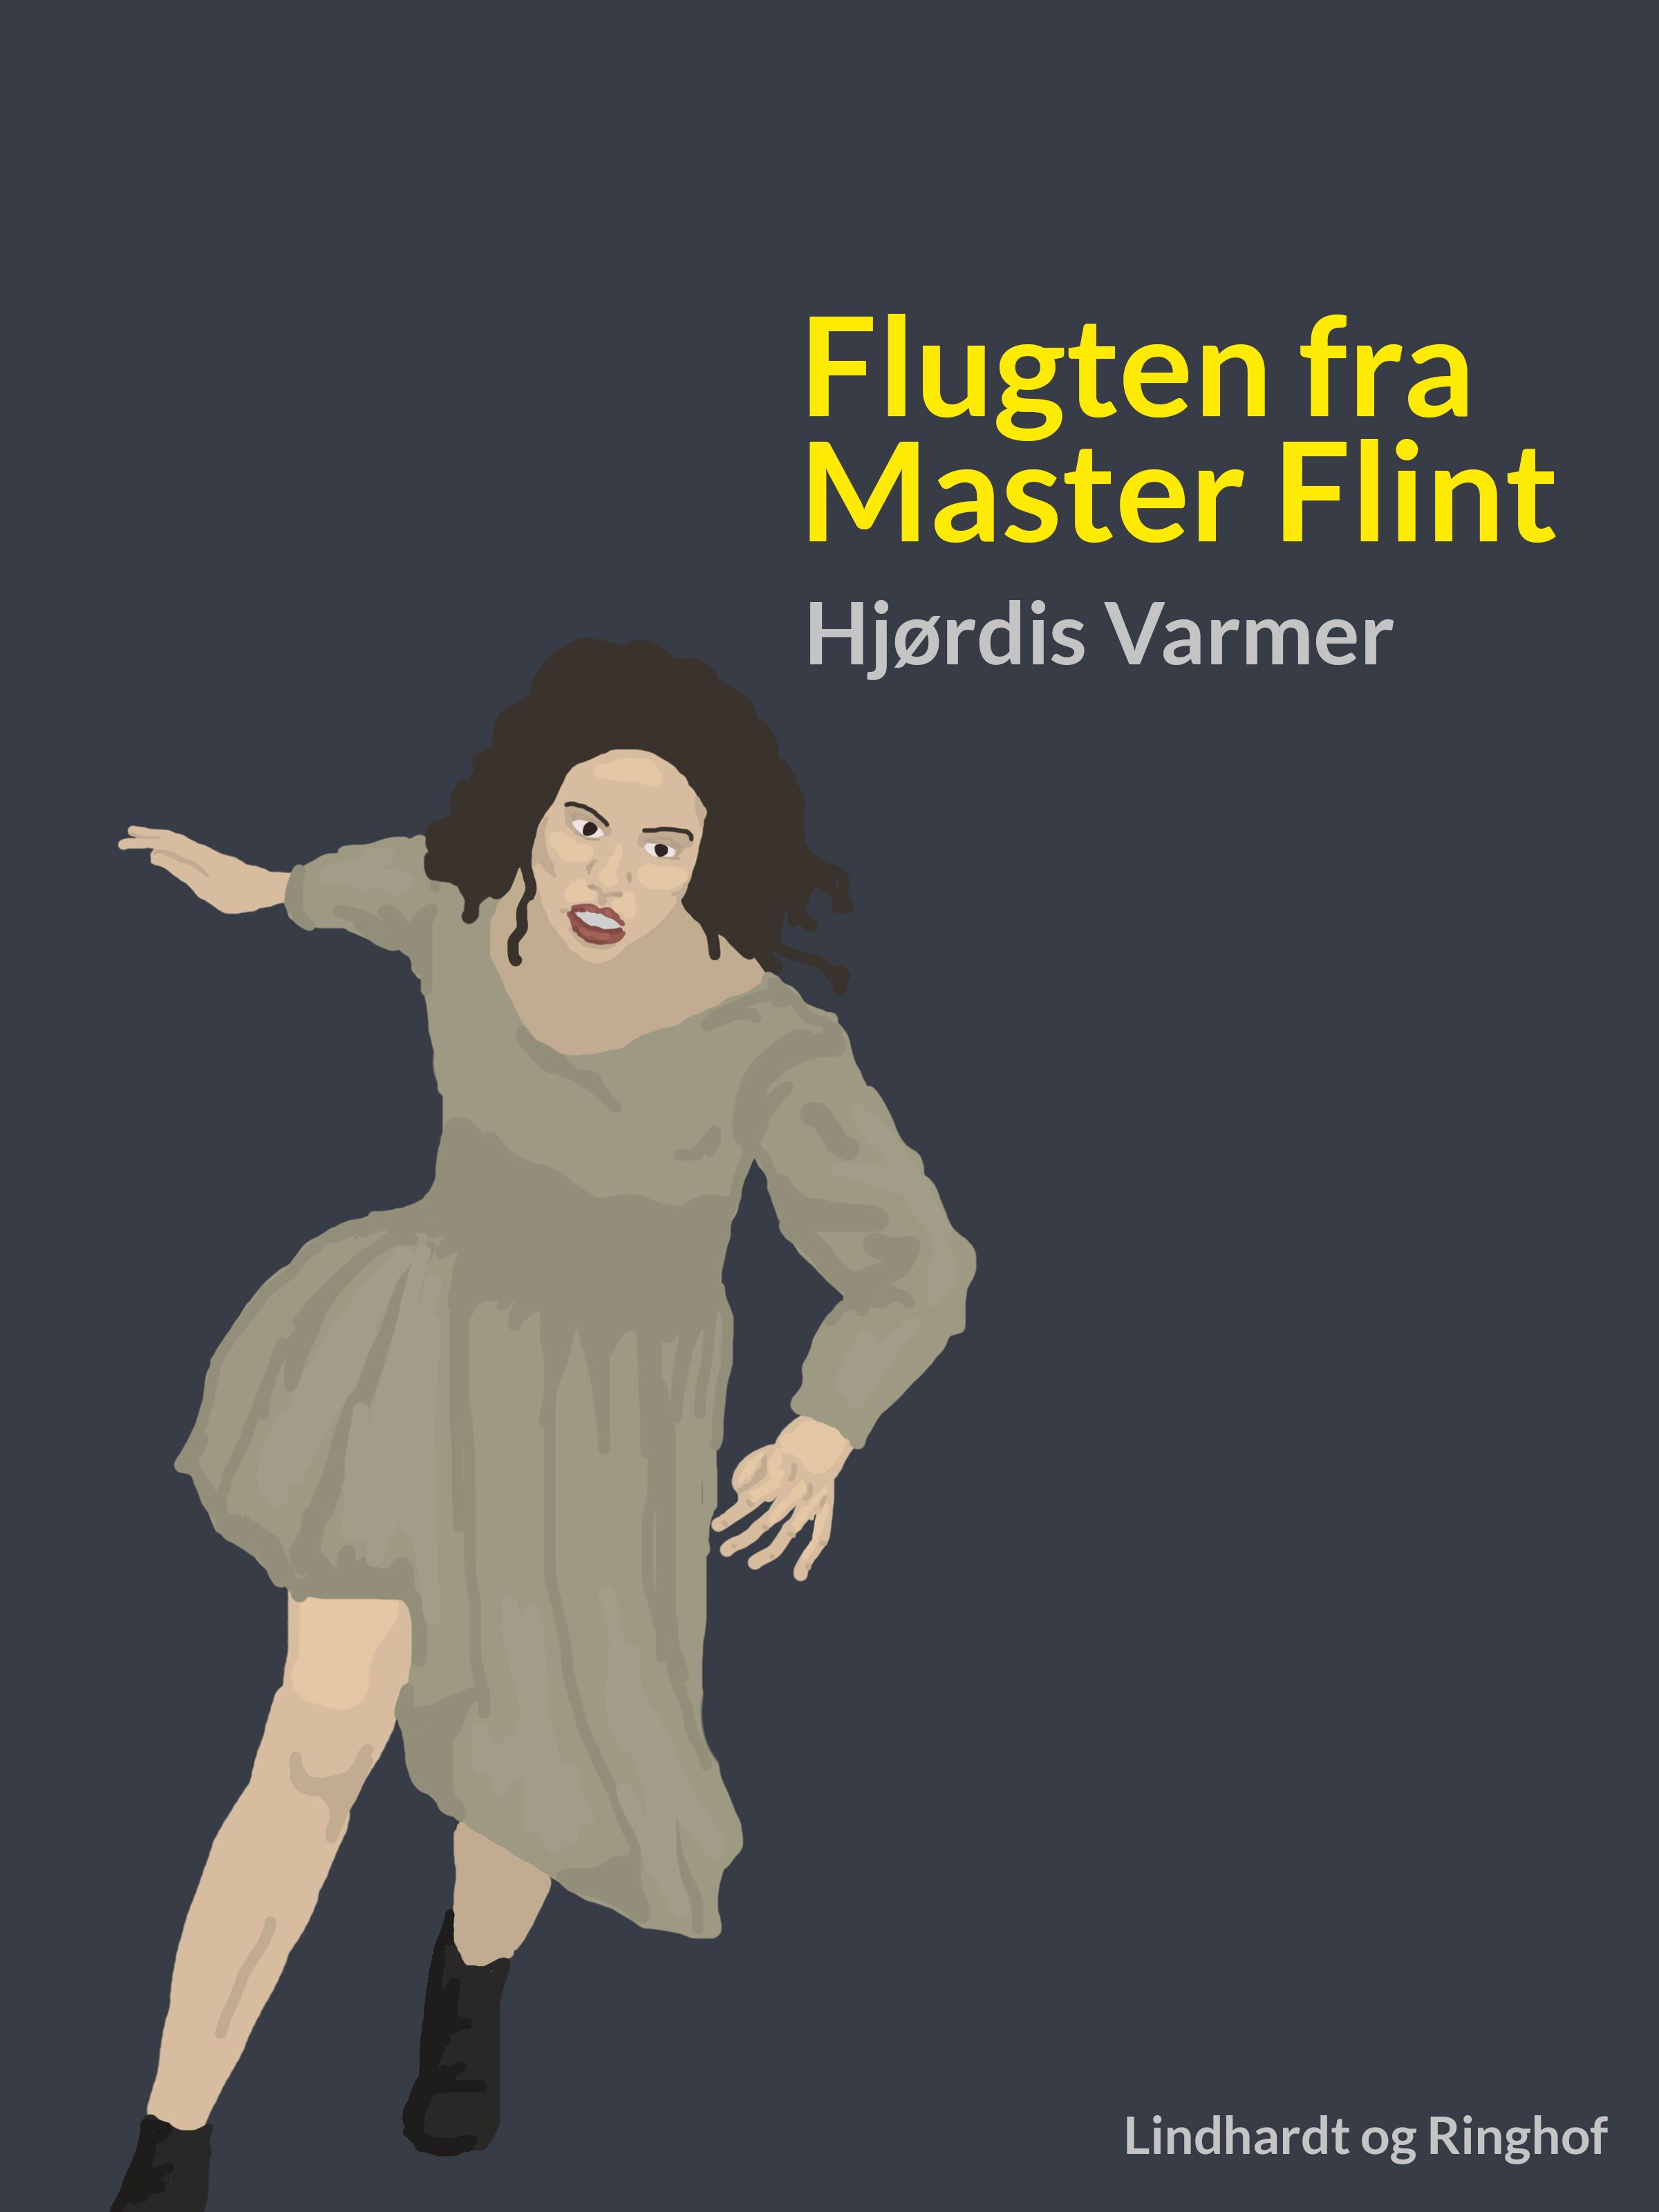 Flugten fra Master Flint, ljudbok av Hjørdis Varmer